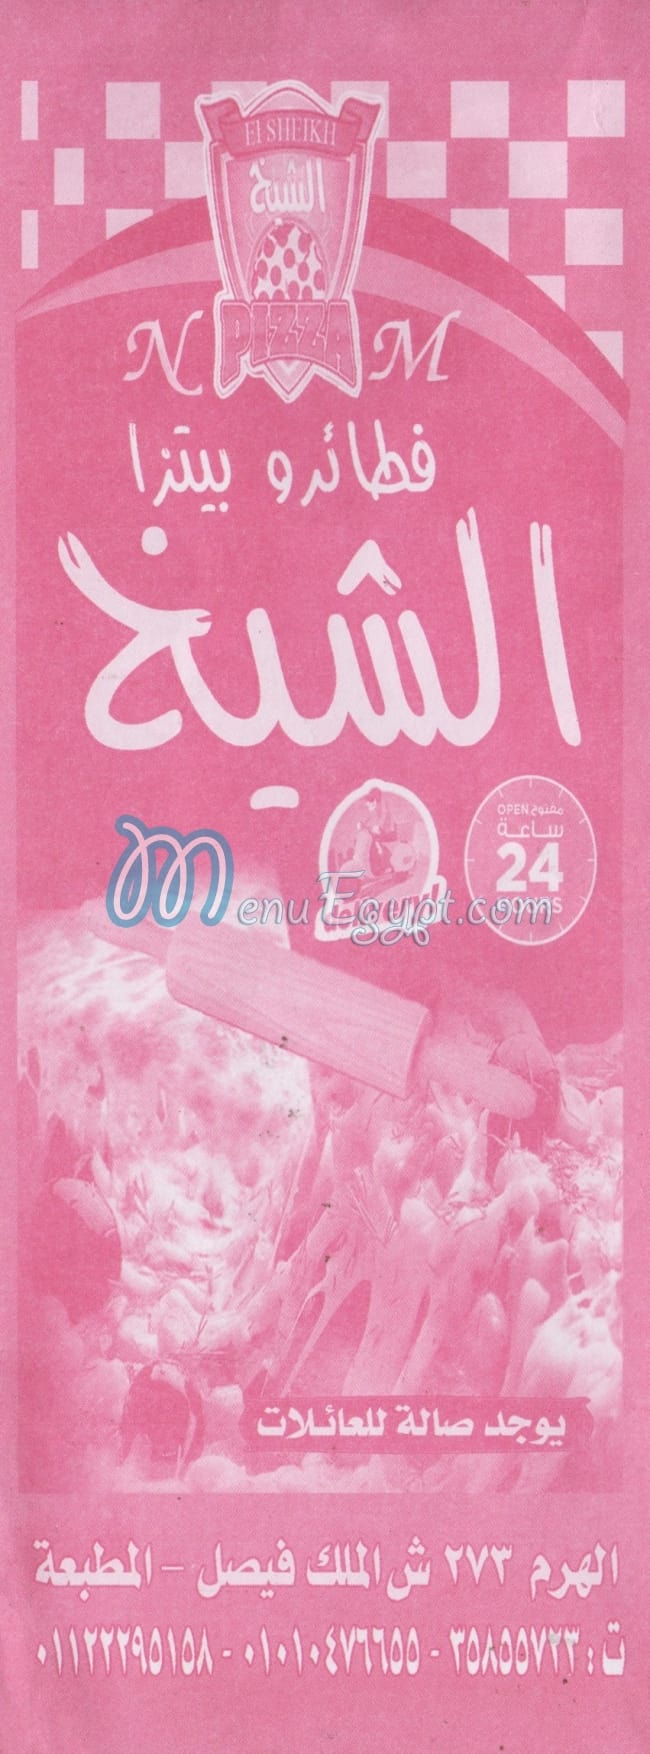 pizza El Shiekh menu